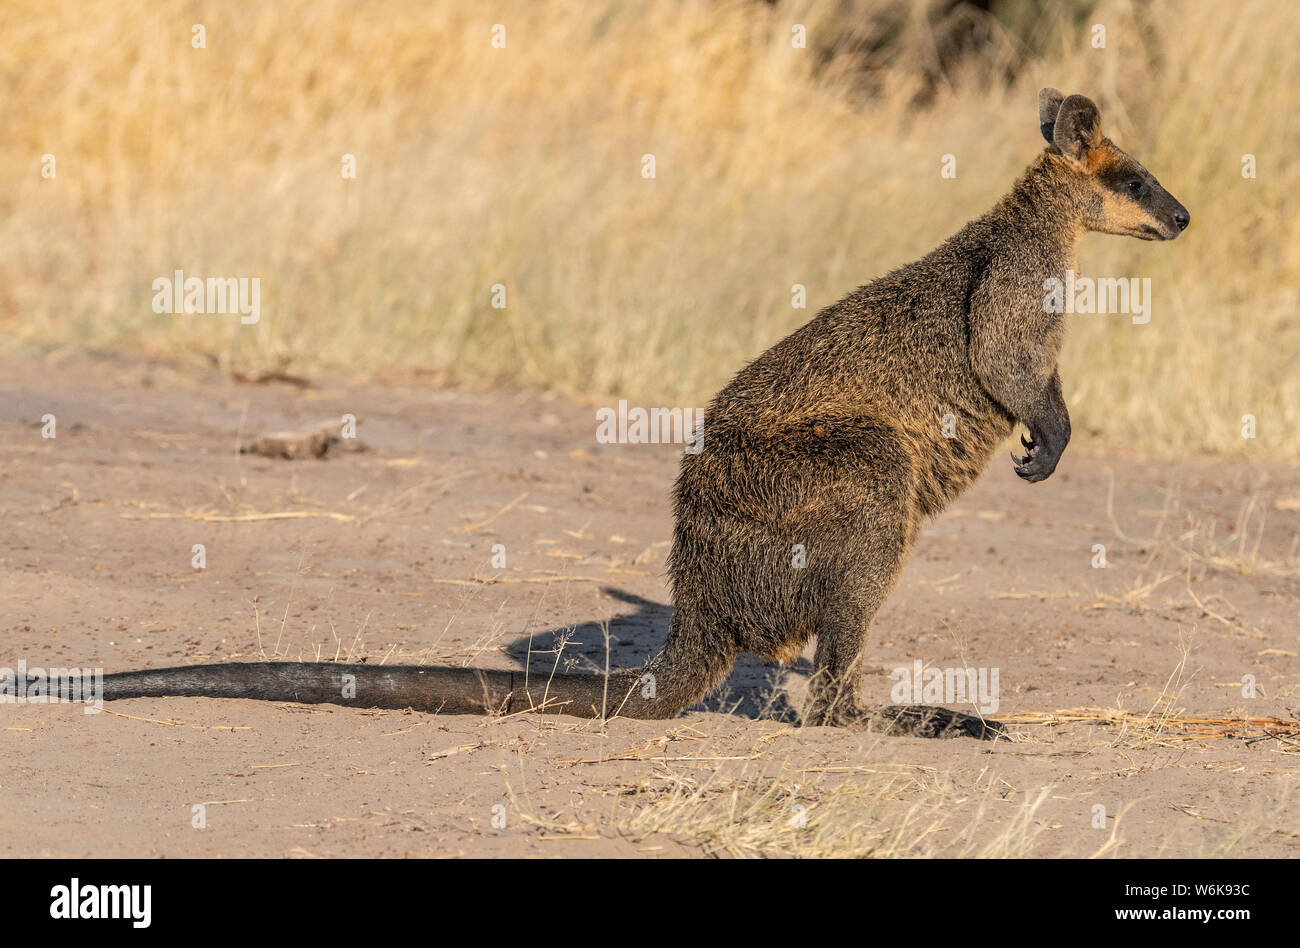 Un pantano Wallaby atrapado en el abierto contempla la posibilidad de permanecer put o saltar a la seguridad Foto de stock